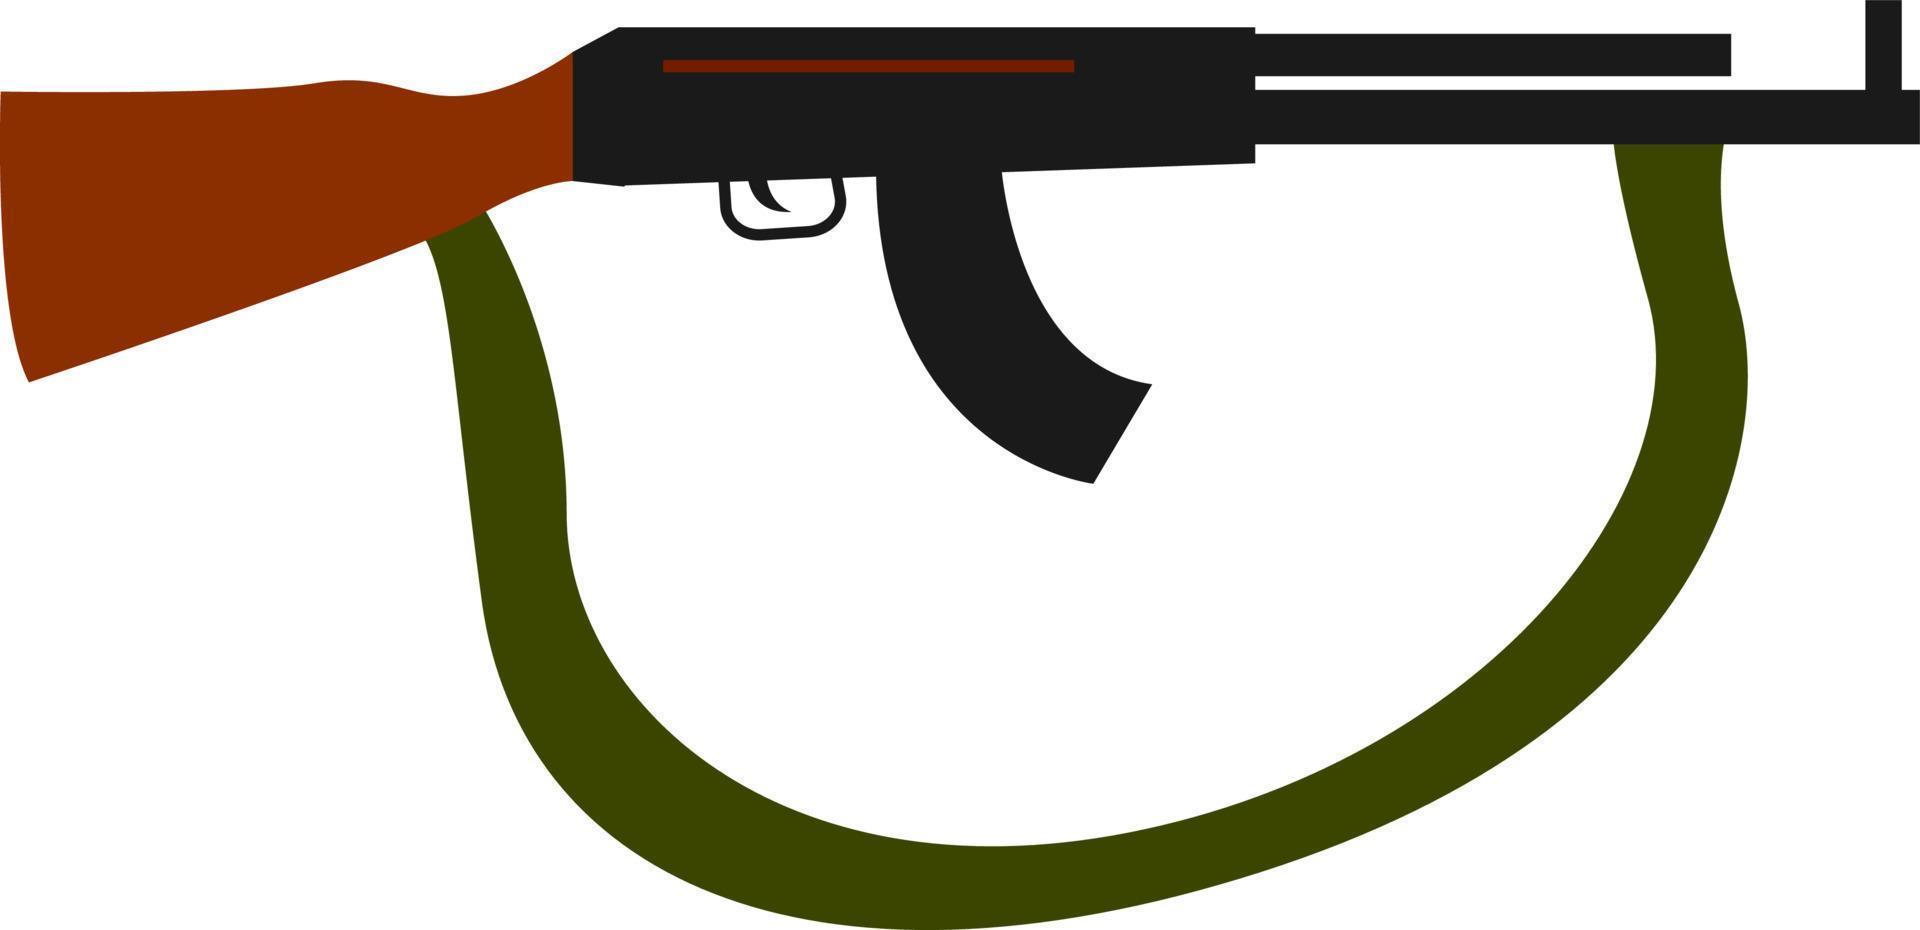 Sturmgewehr mit grünem Gürtel, Illustration, Vektor auf weißem Hintergrund.